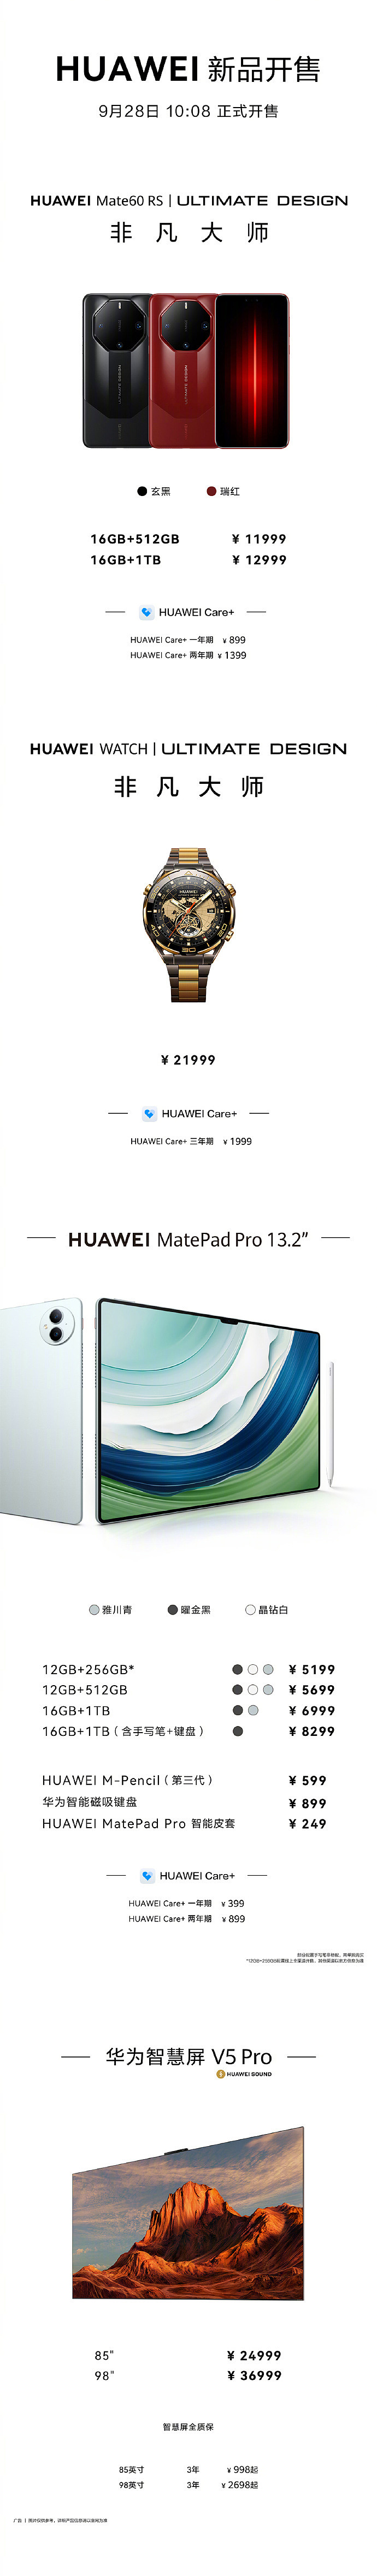 华为 Mate60 RS 非凡大师手机、MatePad Pro 13.2 今日 10:08 正式开售 - 1